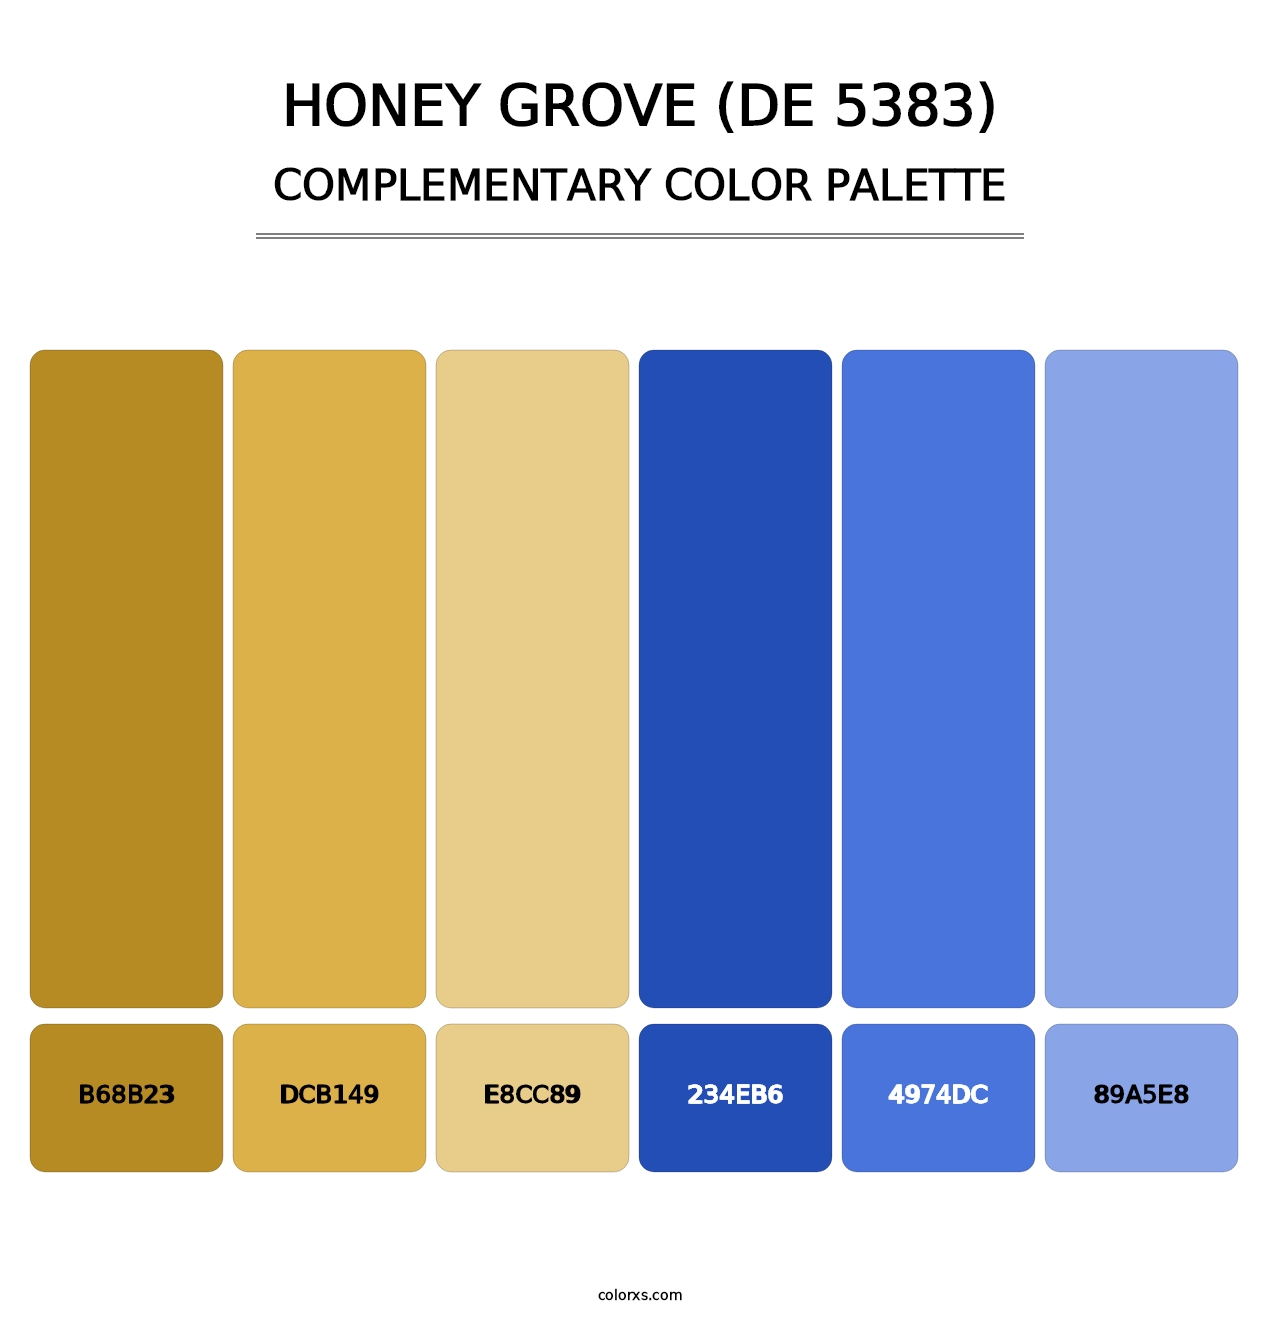 Honey Grove (DE 5383) - Complementary Color Palette